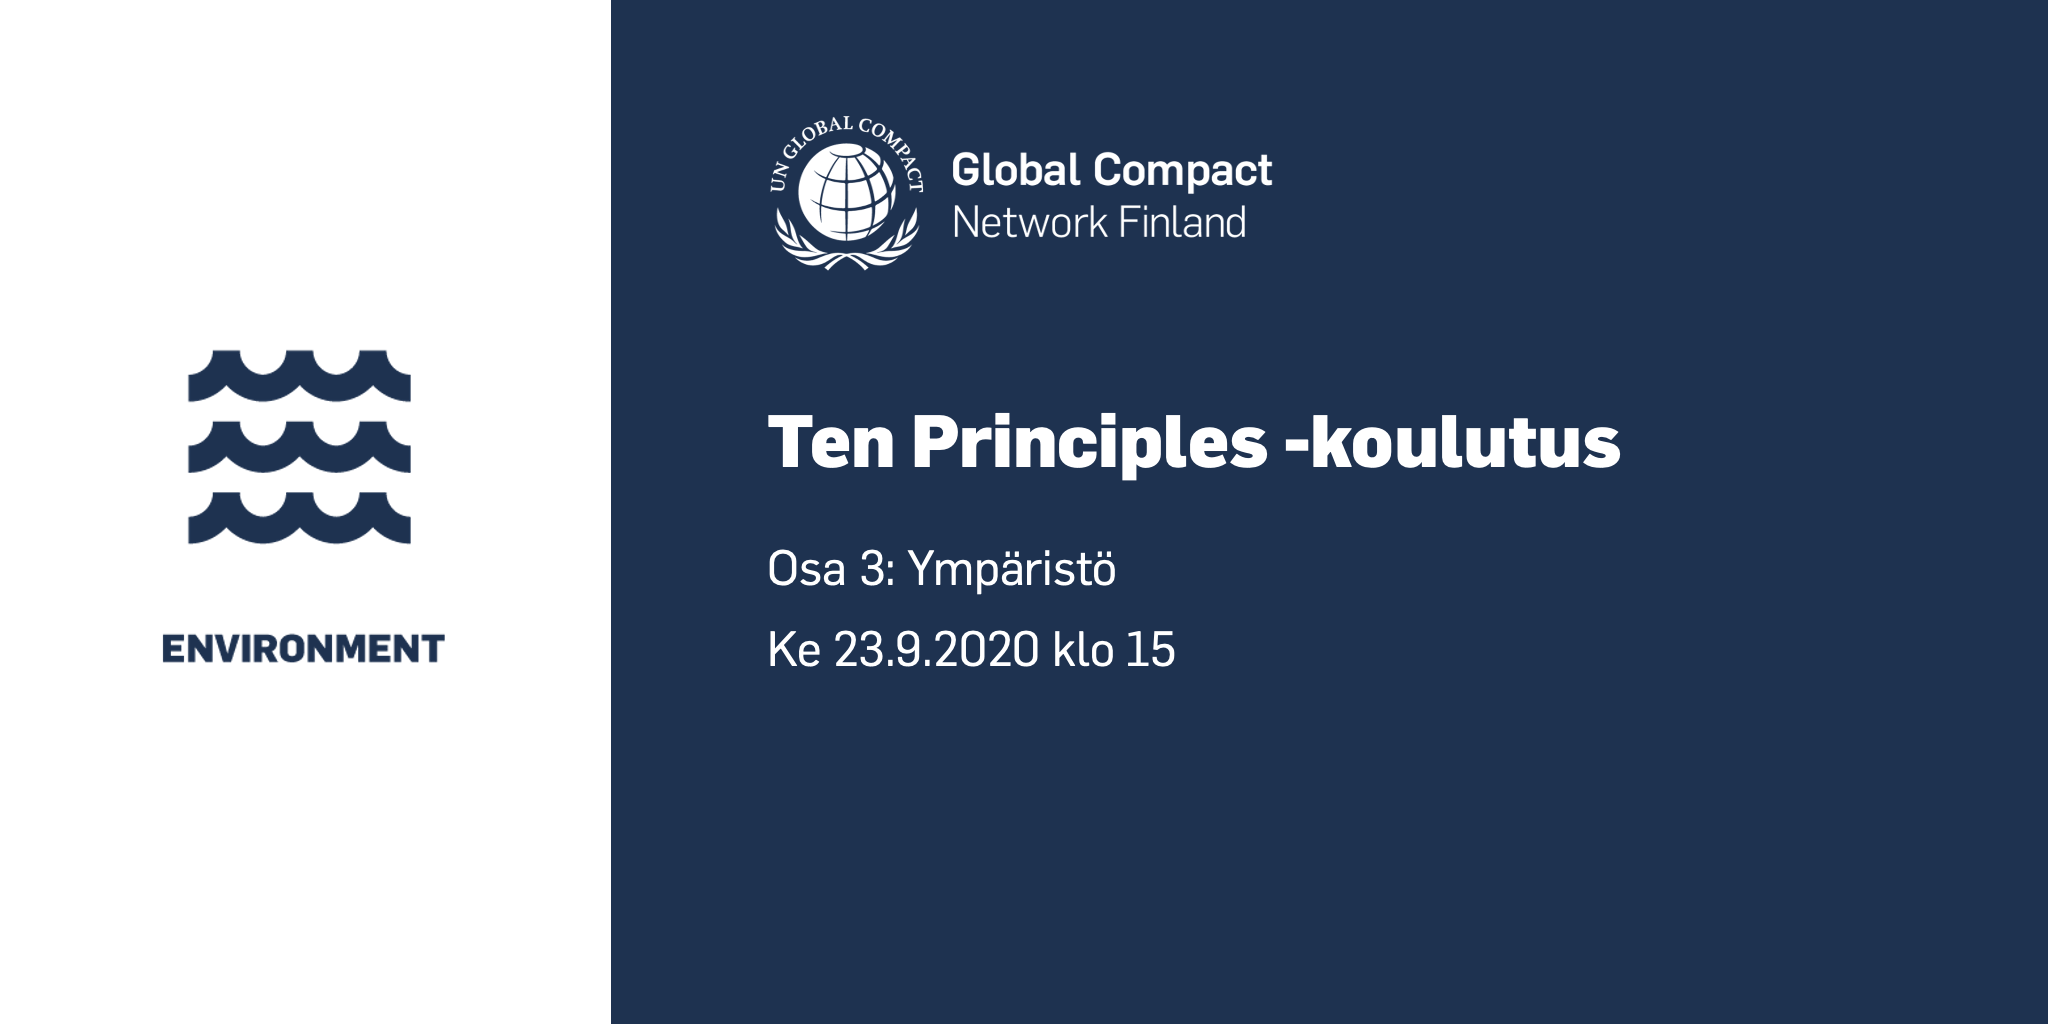 Ten Principles -koulutuksen kolmas osa järjestetään keskiviikkona 23.9. klo 15.